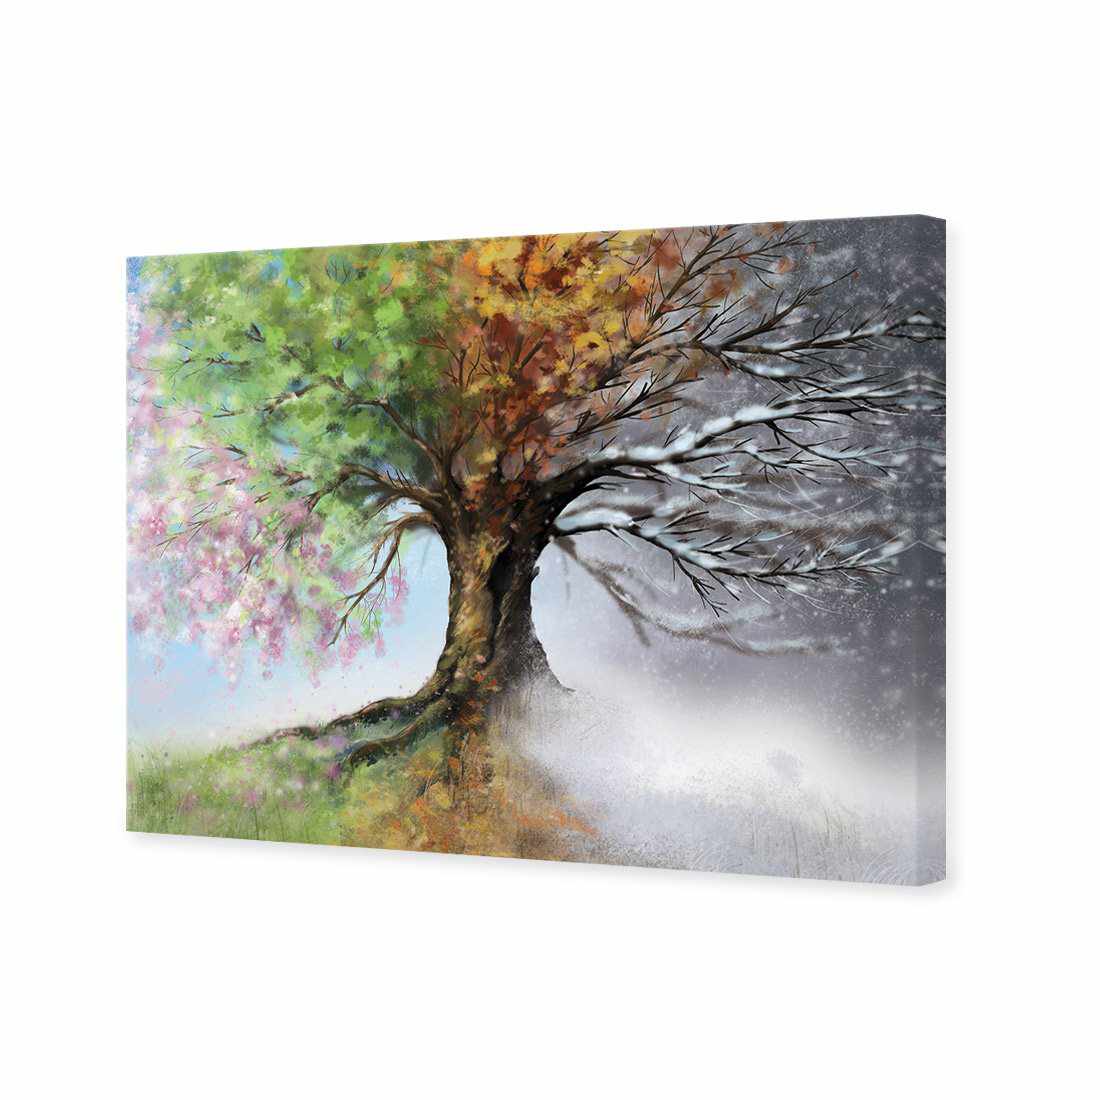 Mystical Tree Canvas Art-Canvas-Wall Art Designs-45x30cm-Canvas - No Frame-Wall Art Designs